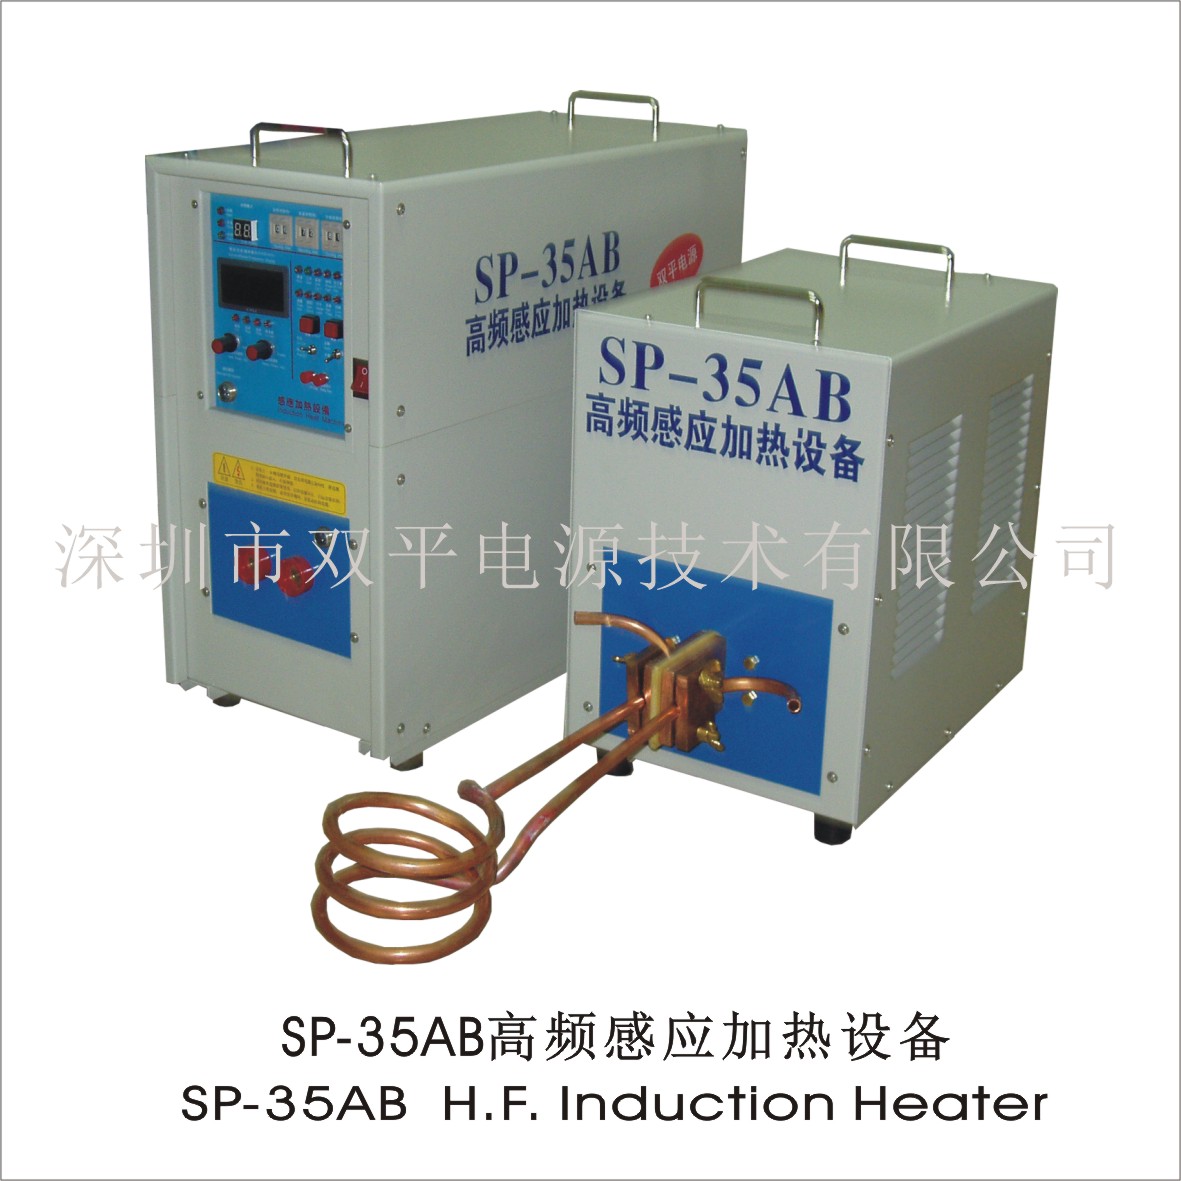 深圳双平SP-35AB高频感应加热设备用于齿轮轴等零件热处理各种金属熔炼木工刀具钎焊等